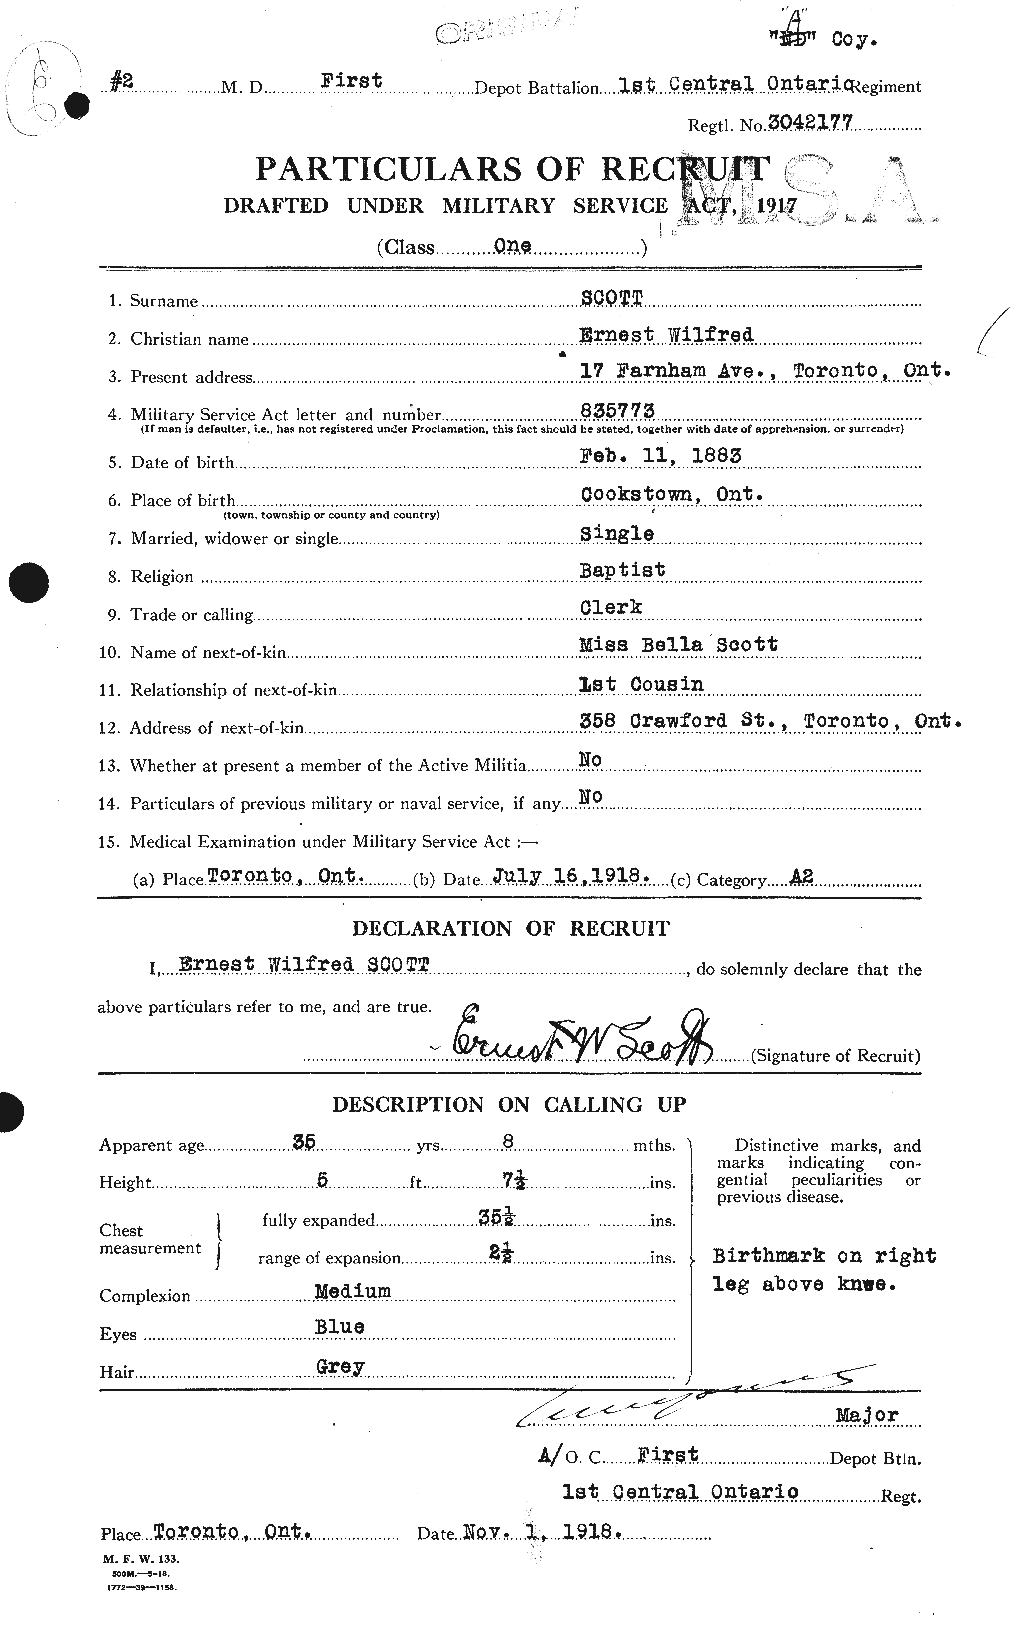 Dossiers du Personnel de la Première Guerre mondiale - CEC 085002a